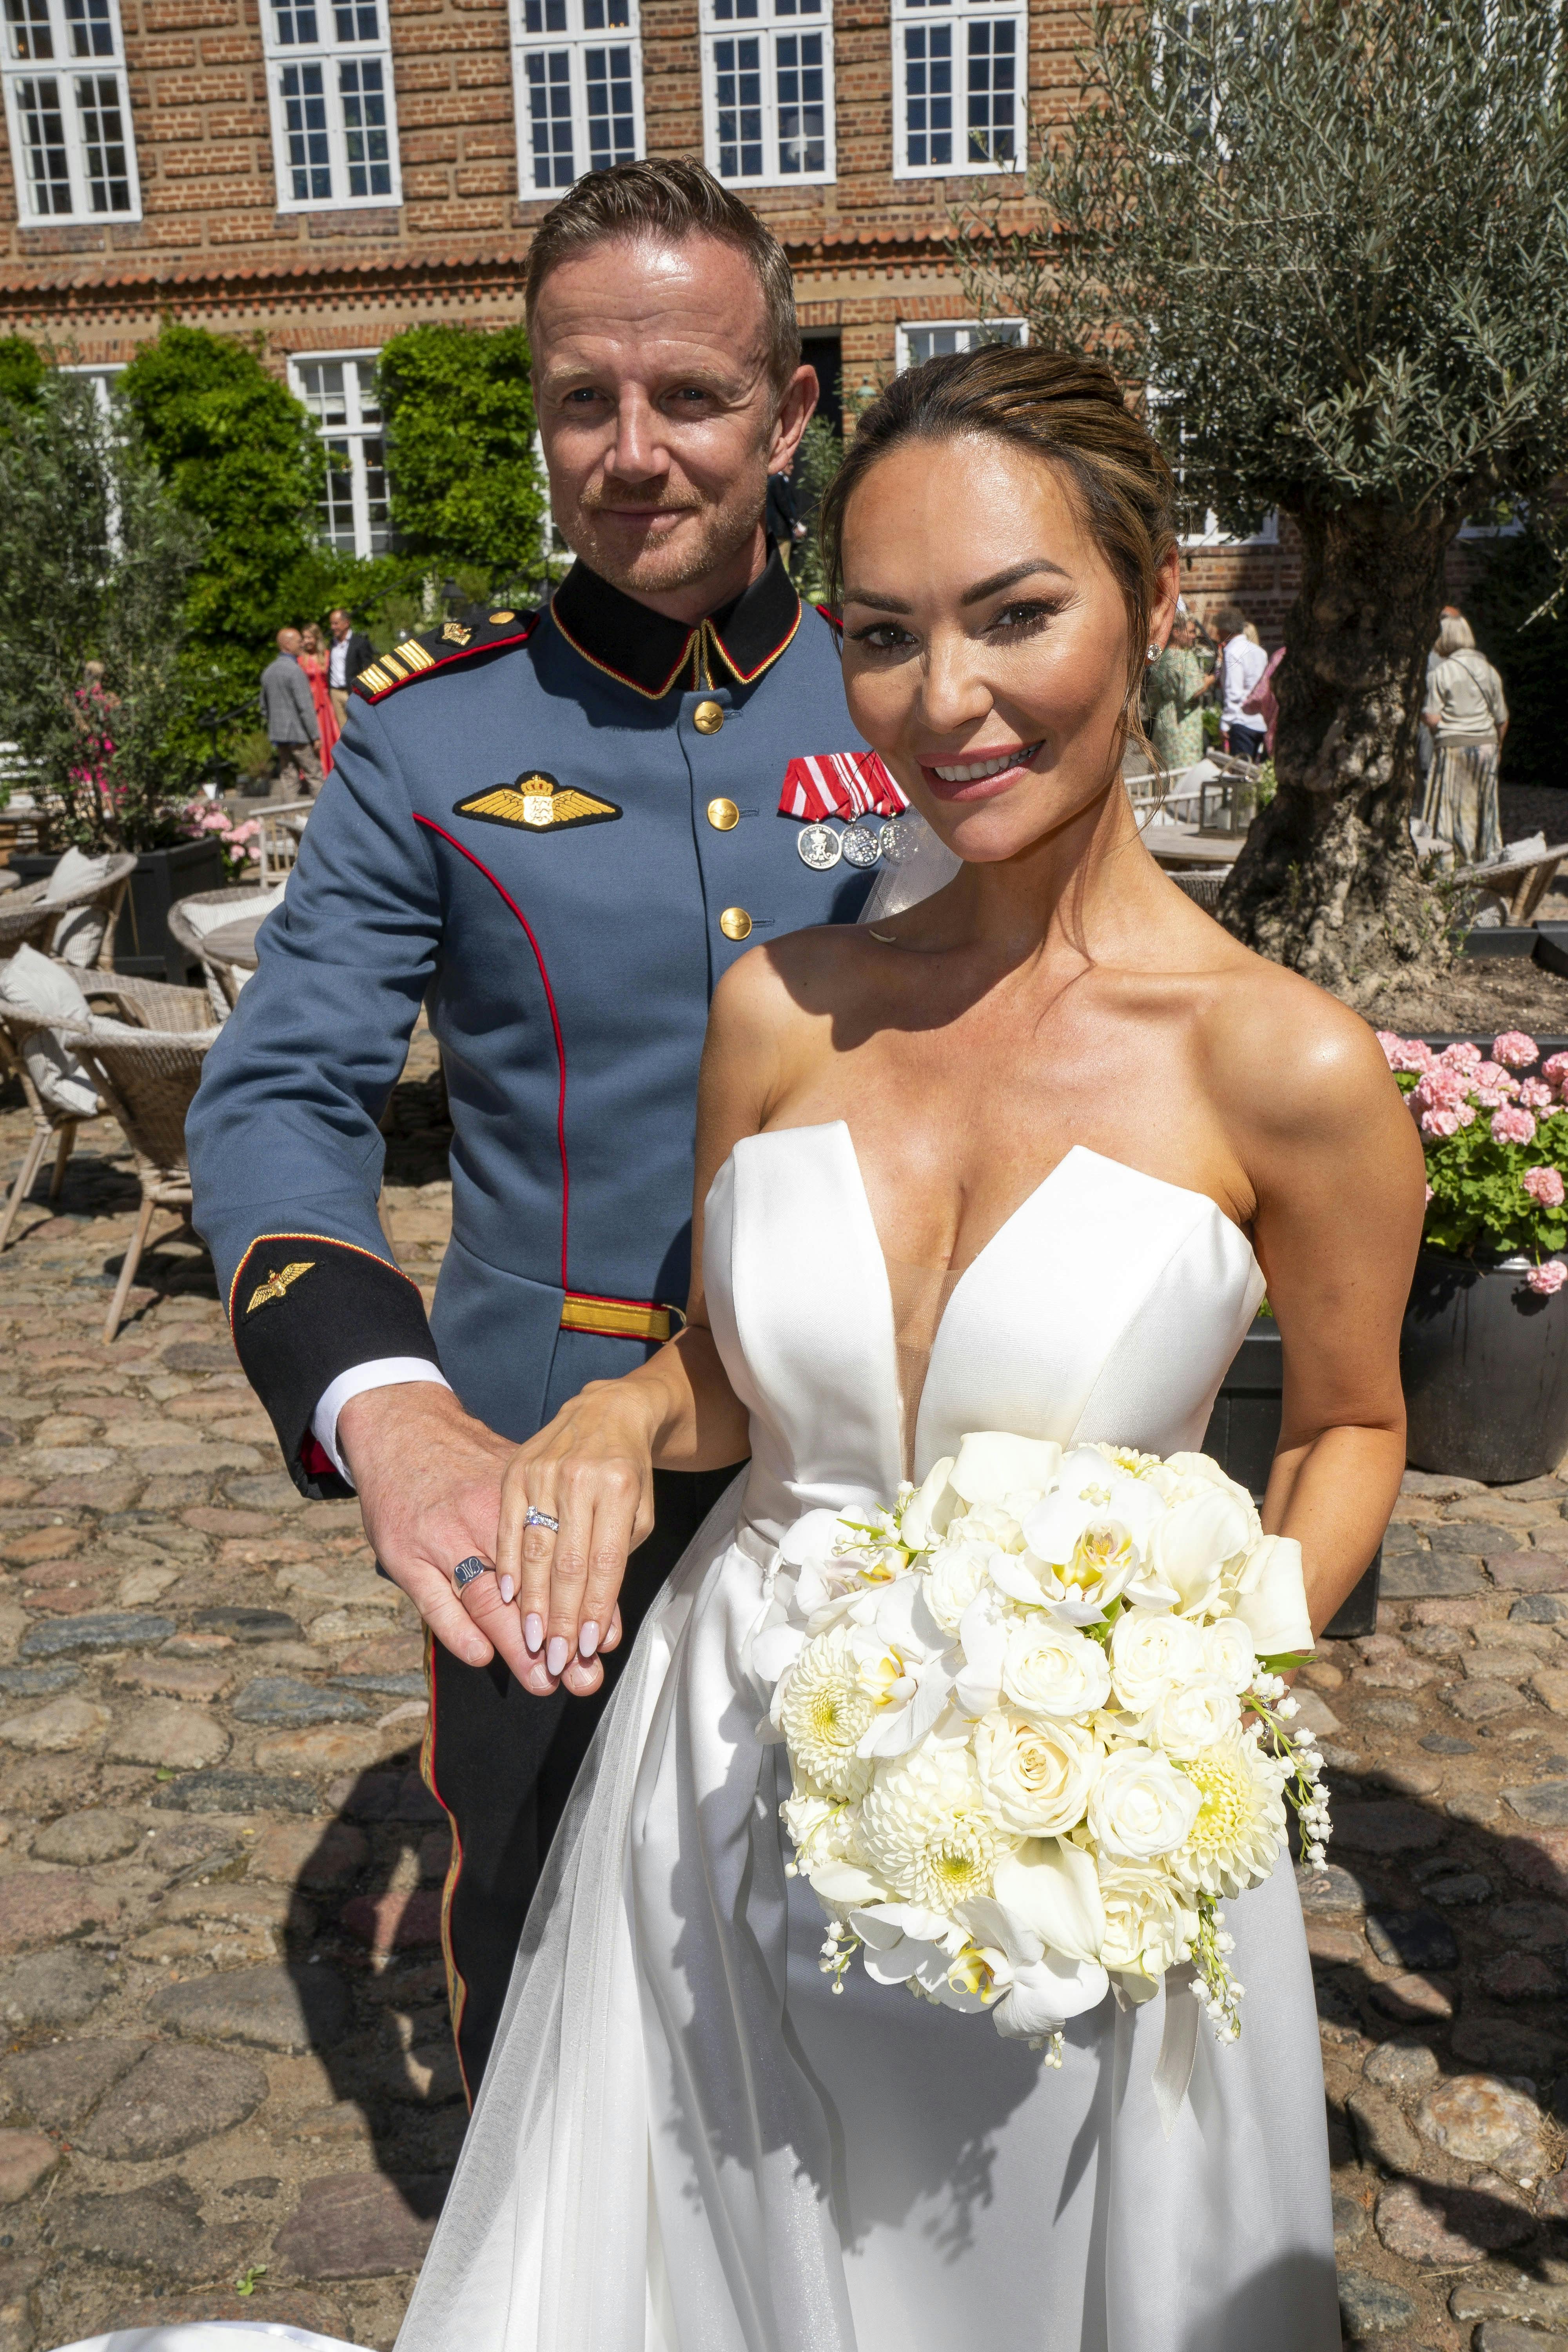 Mascha Vang er for nylig blevet gift med Troels Krohn Dehli.